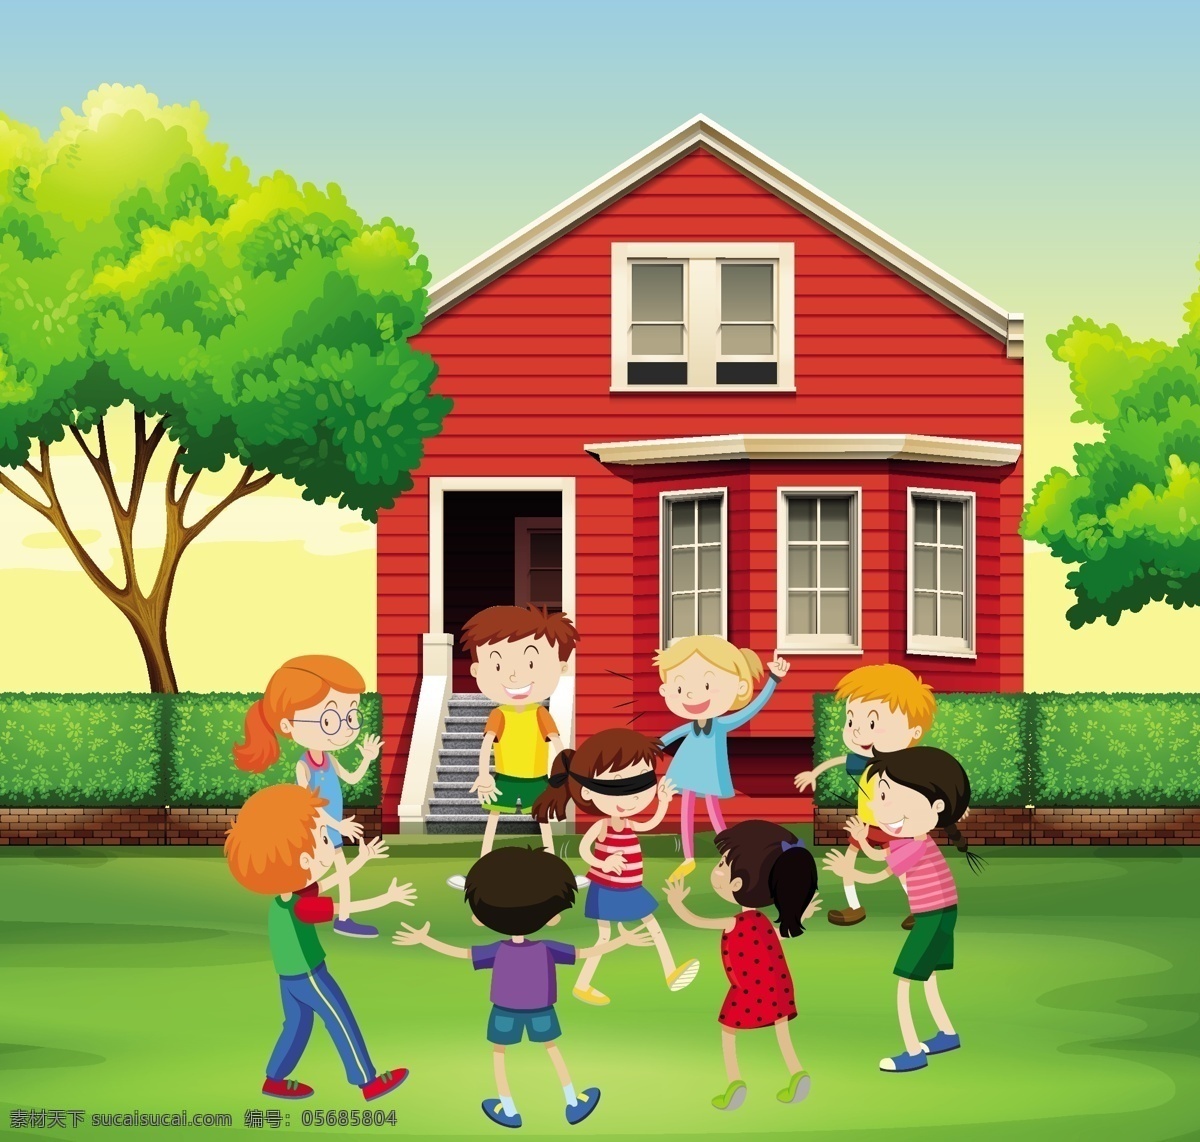 儿童游戏 背景 树 孩子 房子 儿童 墙纸 丰富多彩 树木 游戏 色彩 五颜六色 播放 彩色